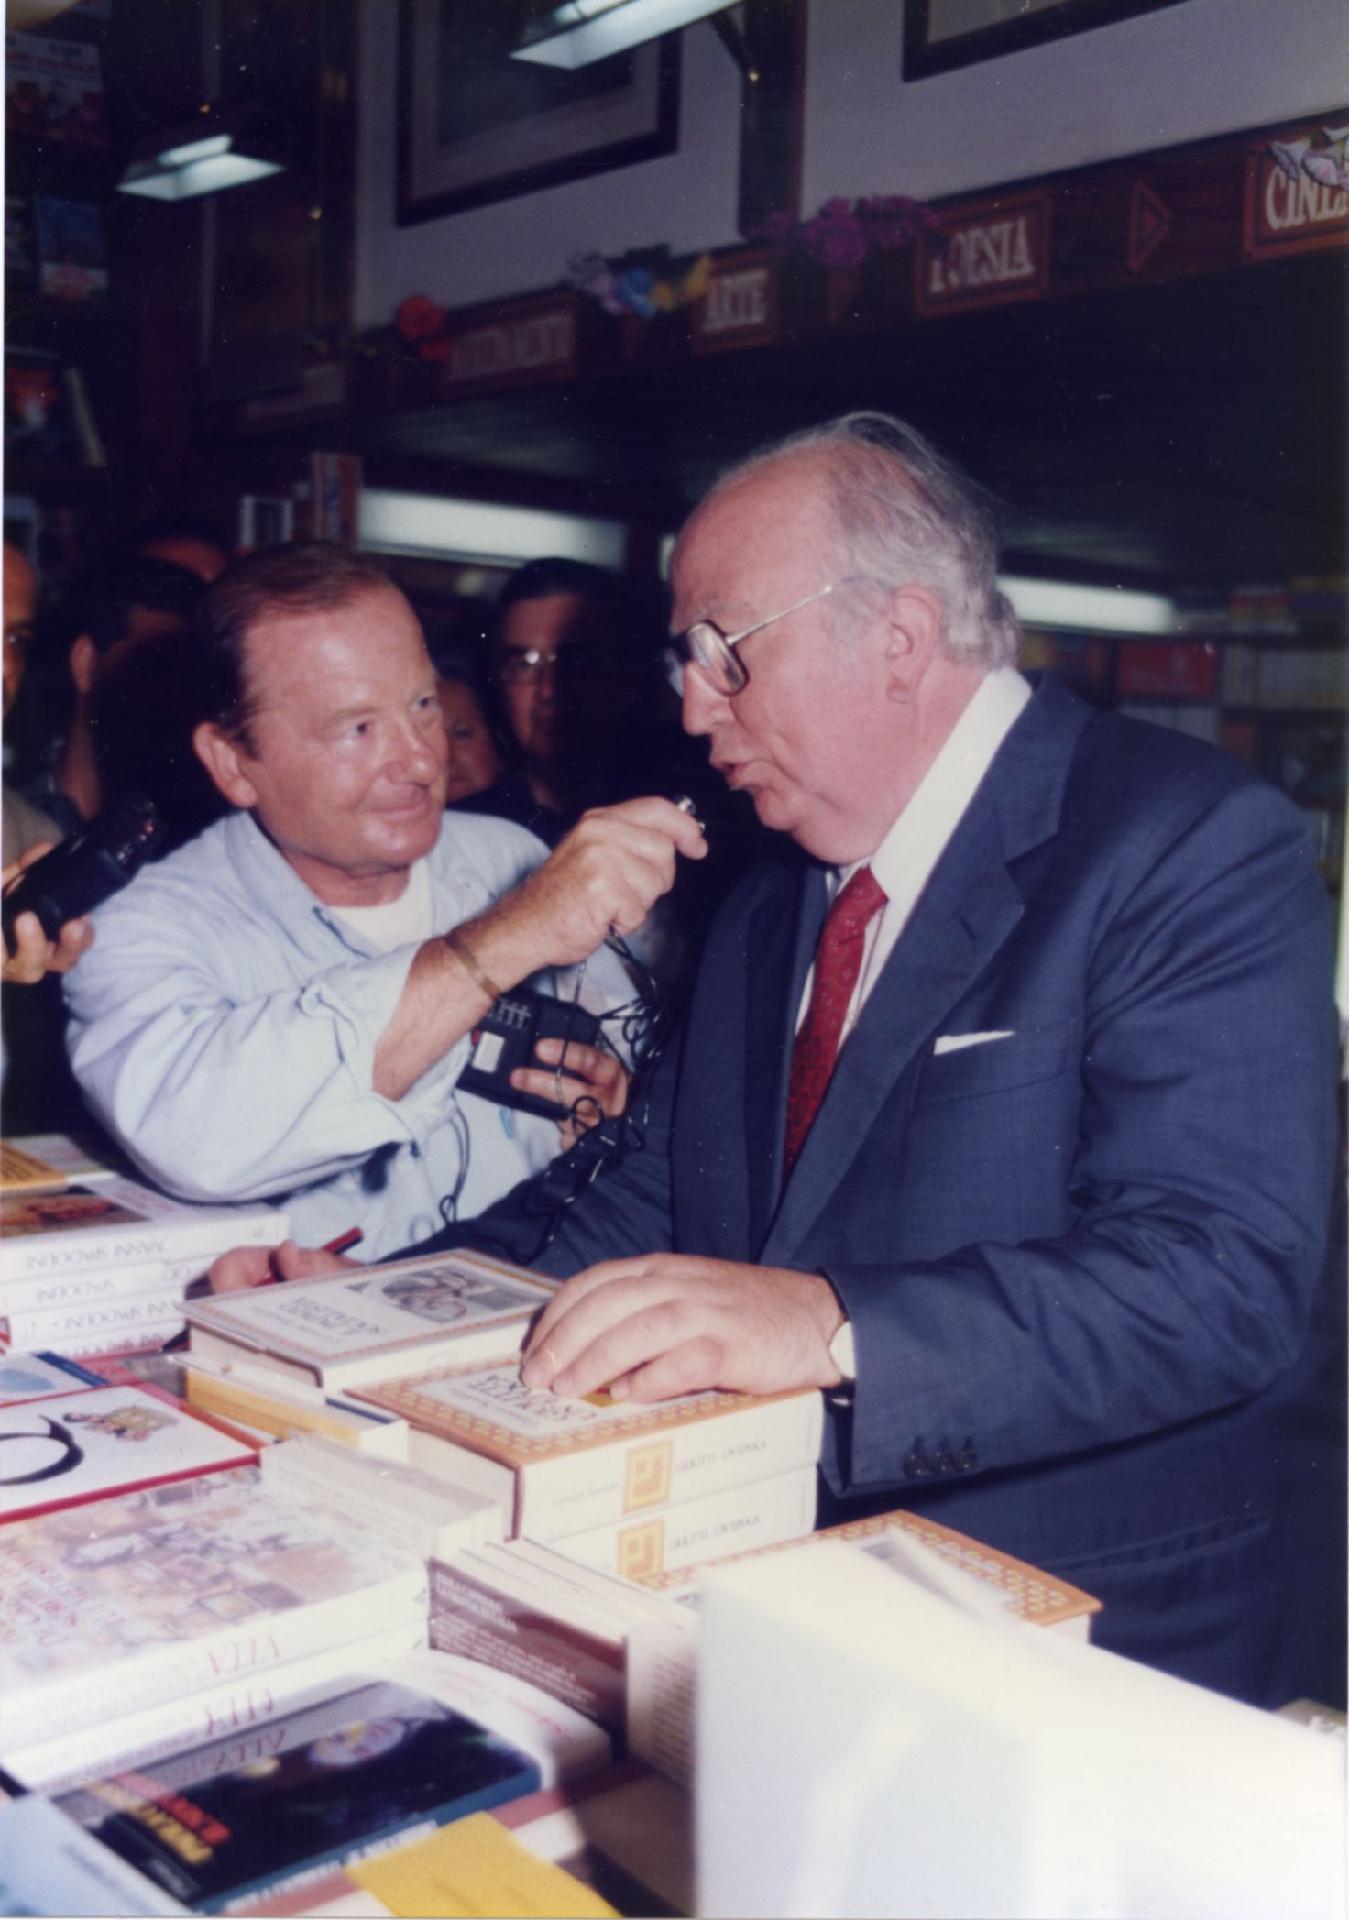 Gianni Bisiach intervista Giovanni Spadolini a Cortina d&apos;Ampezzo il 19 agosto 1989